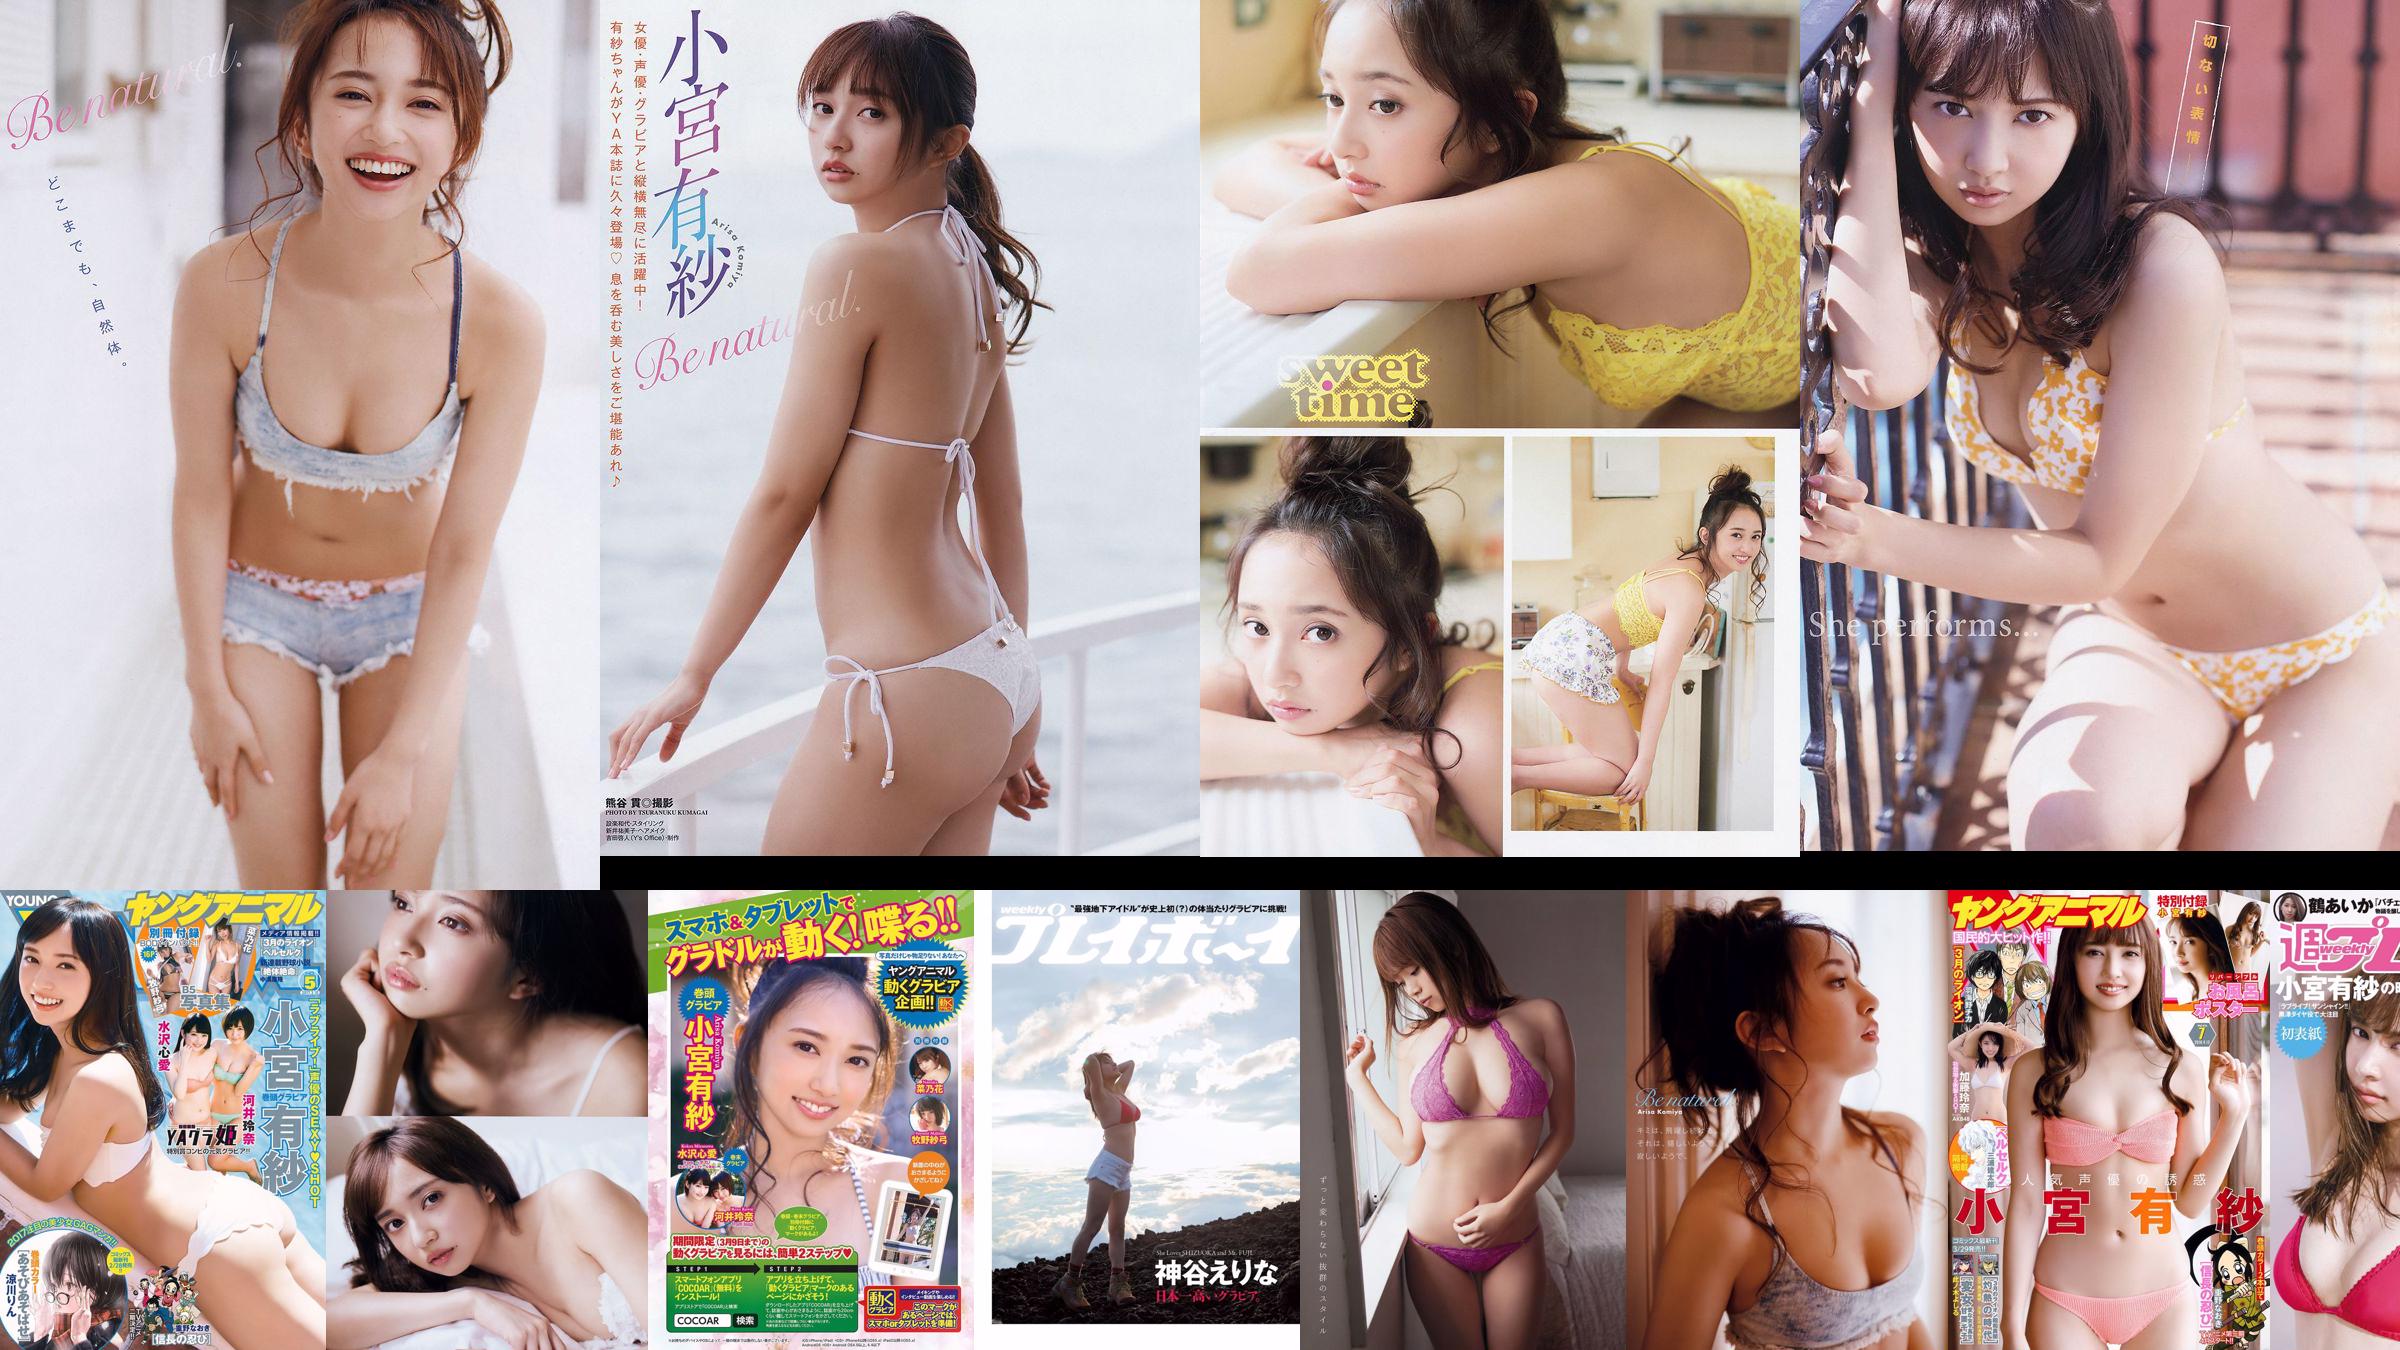 Arisa Komiya Rena Kato [Young Animal] 2018 No.07 Photo Magazine No.bff2e5 Página 1